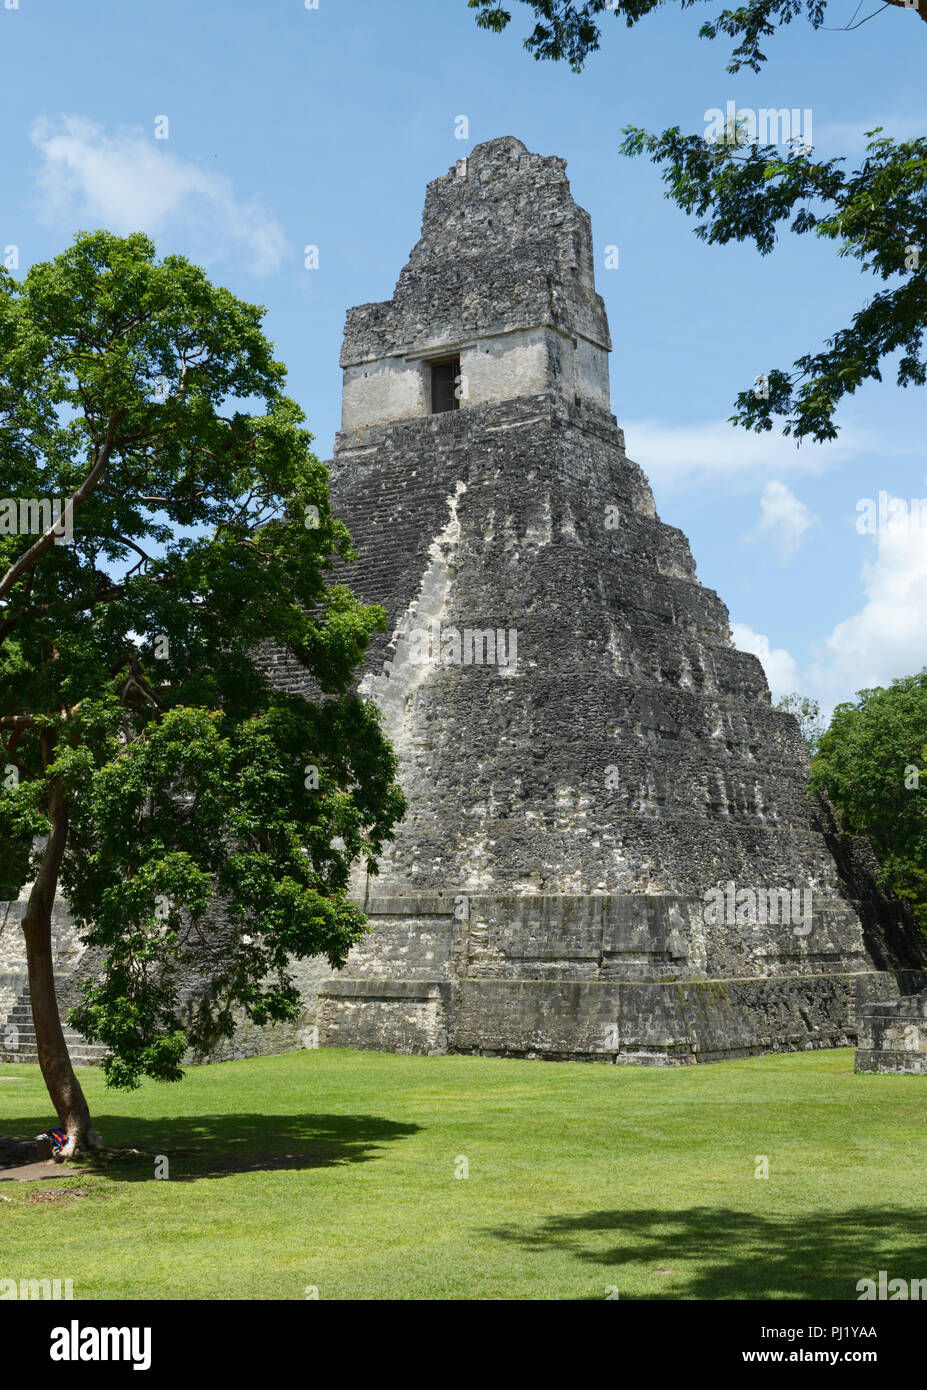 Las ruinas mayas de Tikal, Guatemala, con el templo 1 Foto de stock